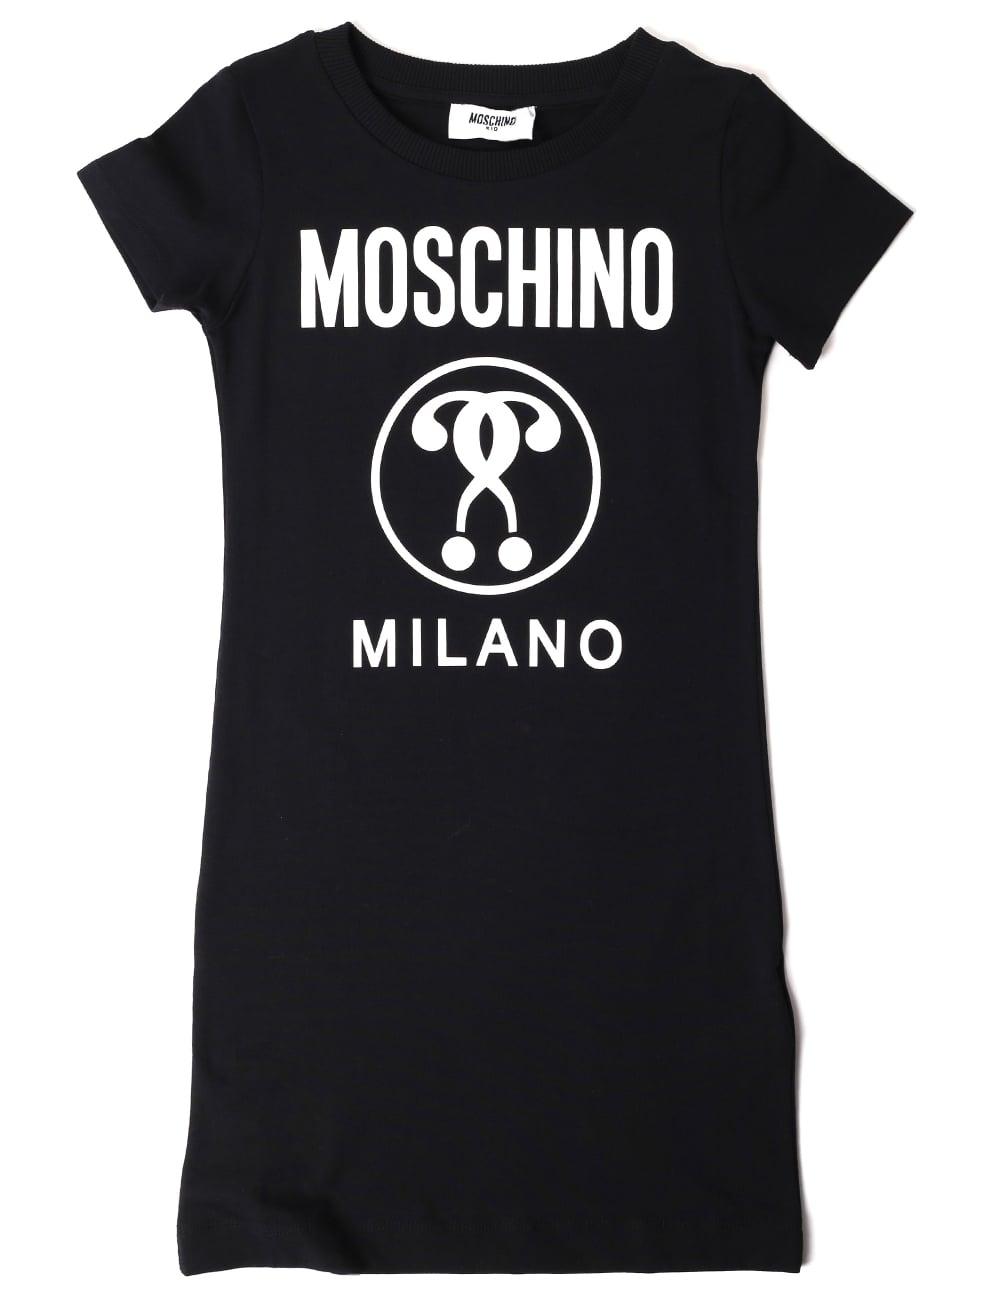 Moschino Milano Logo - LogoDix